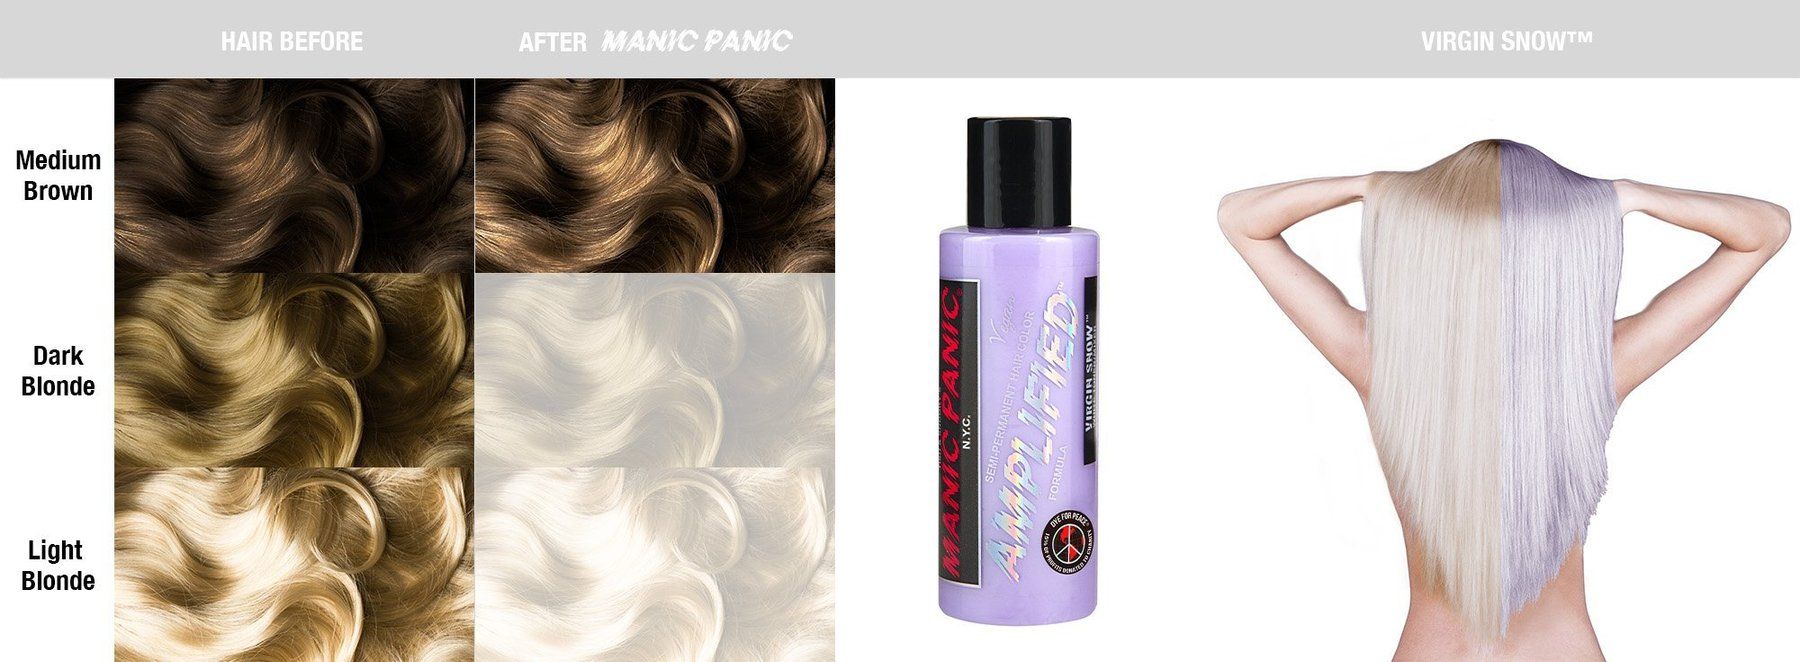 Усиленная белая краска для волос Manic Panic Virgin Snow™ Manic Panic ACR91033 Изображение 10